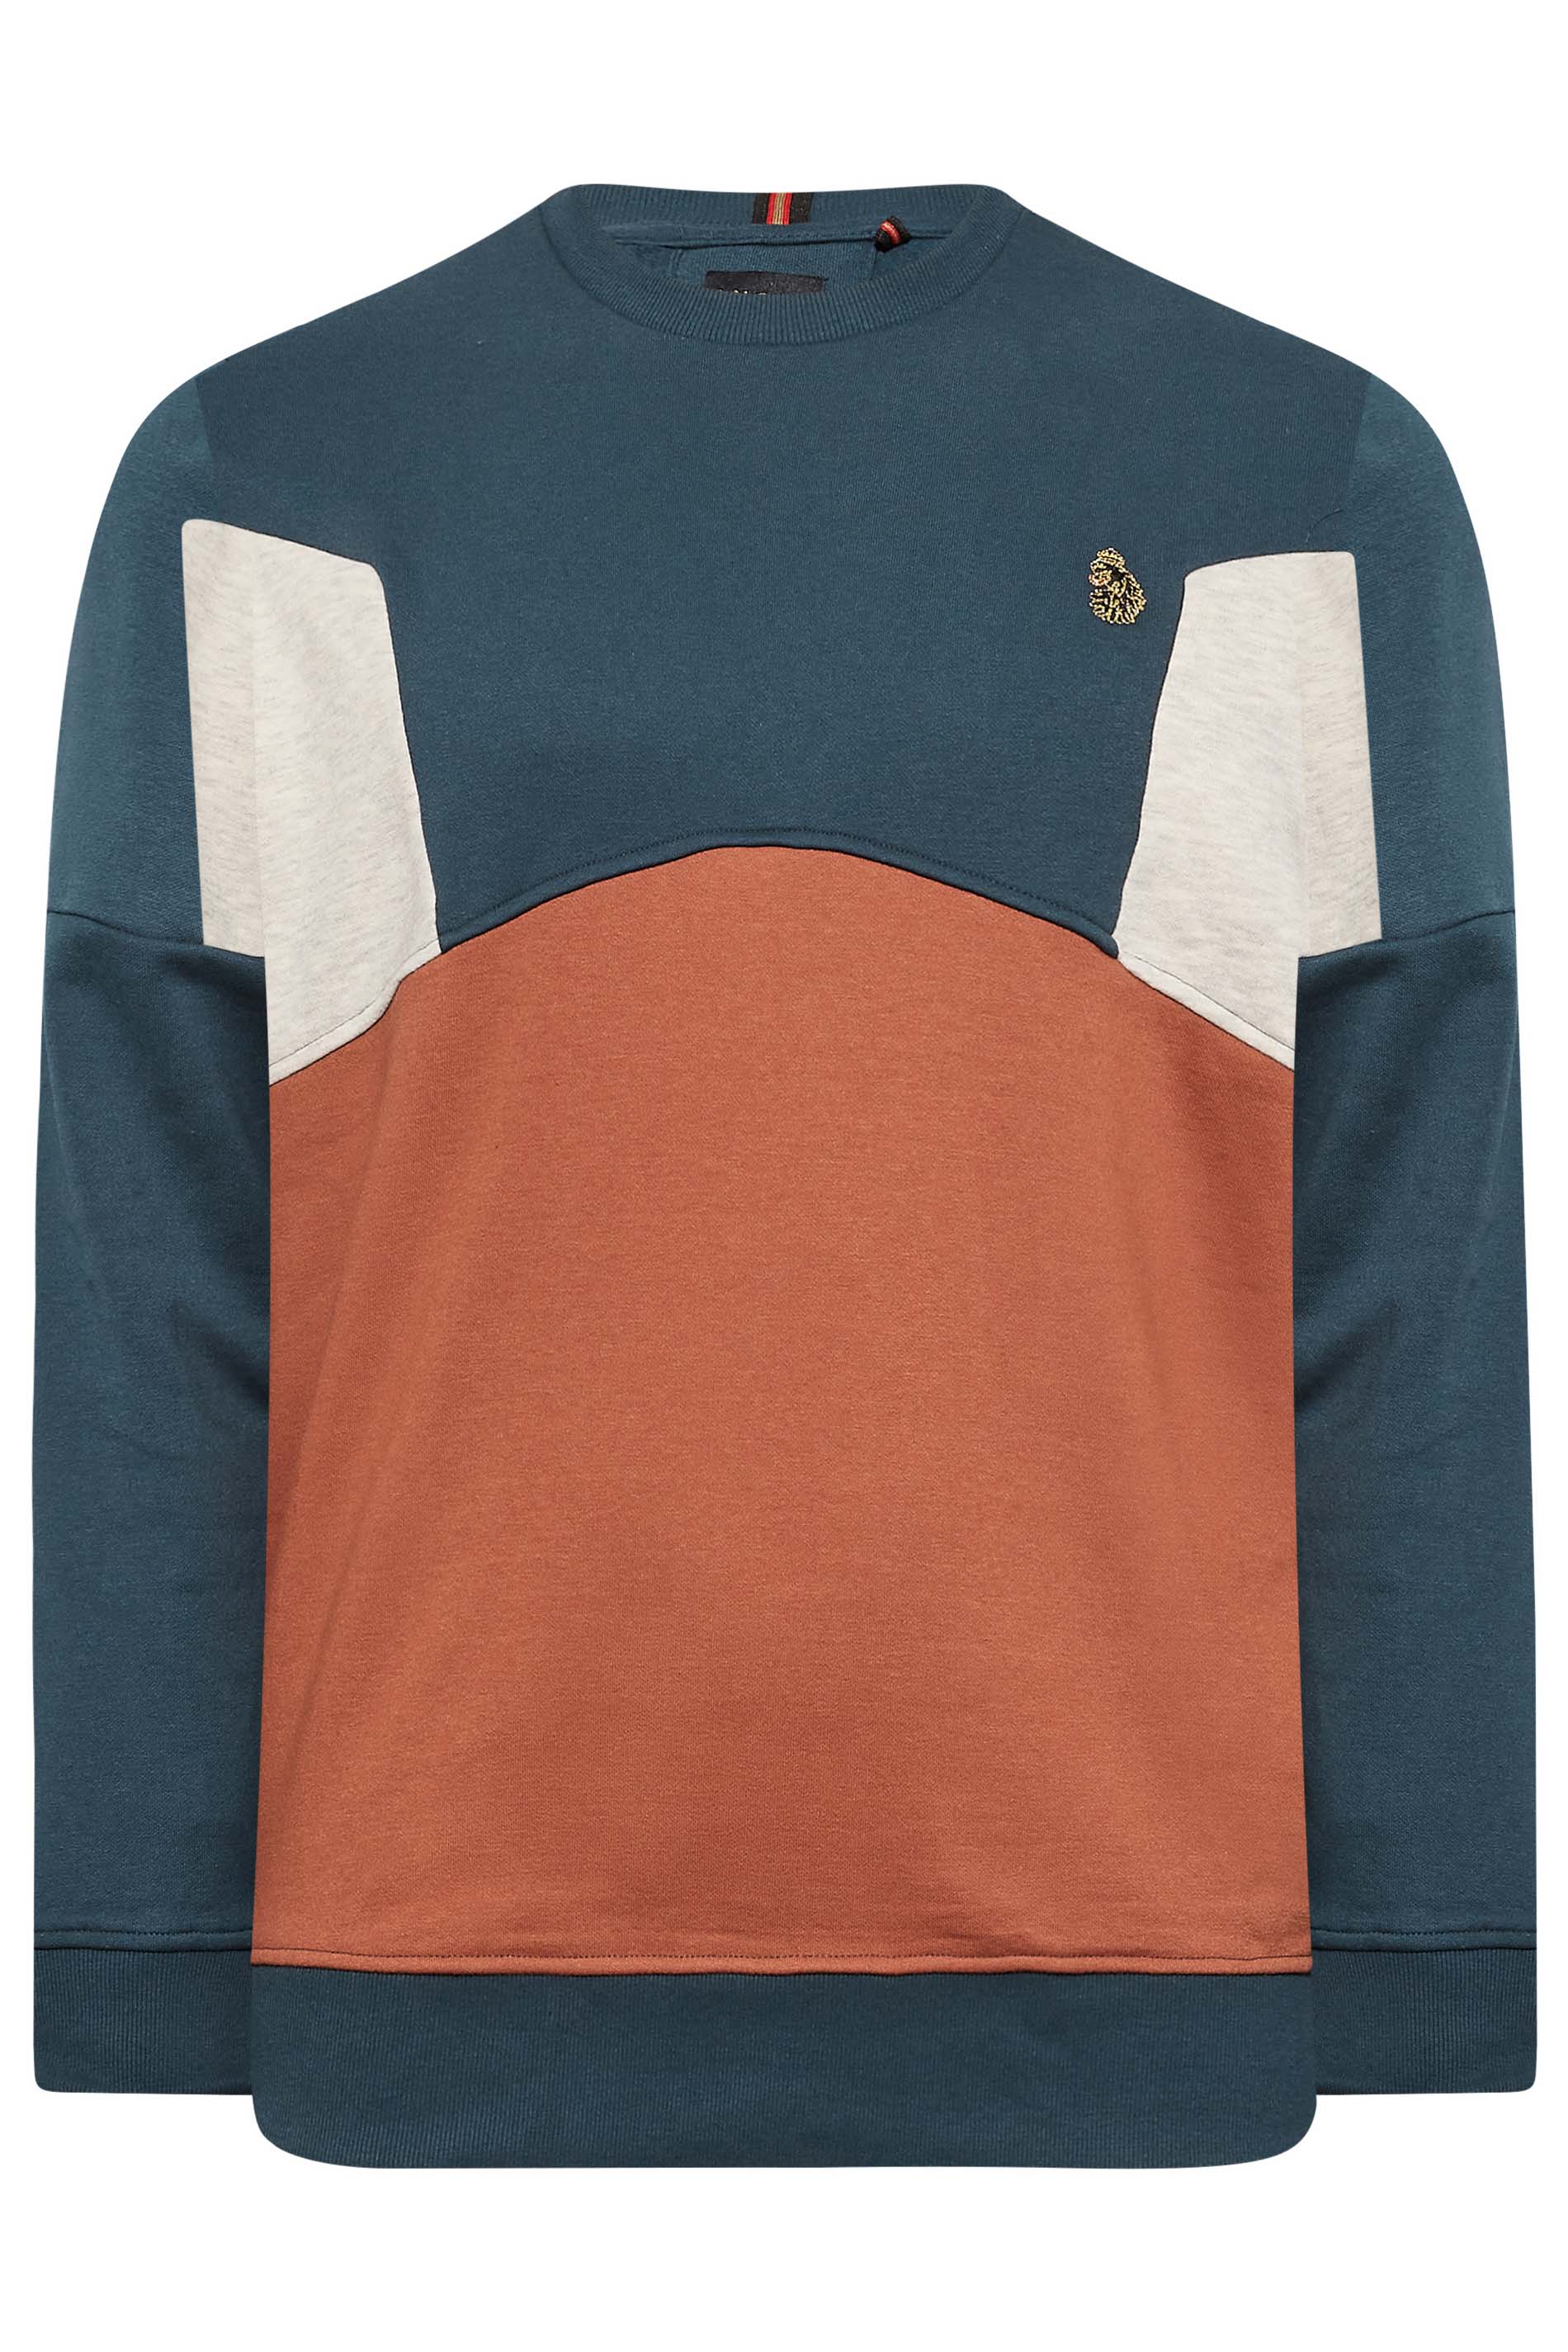 LUKE 1977 Big & Tall Blue & Orange Sweatshirt | BadRhino 3